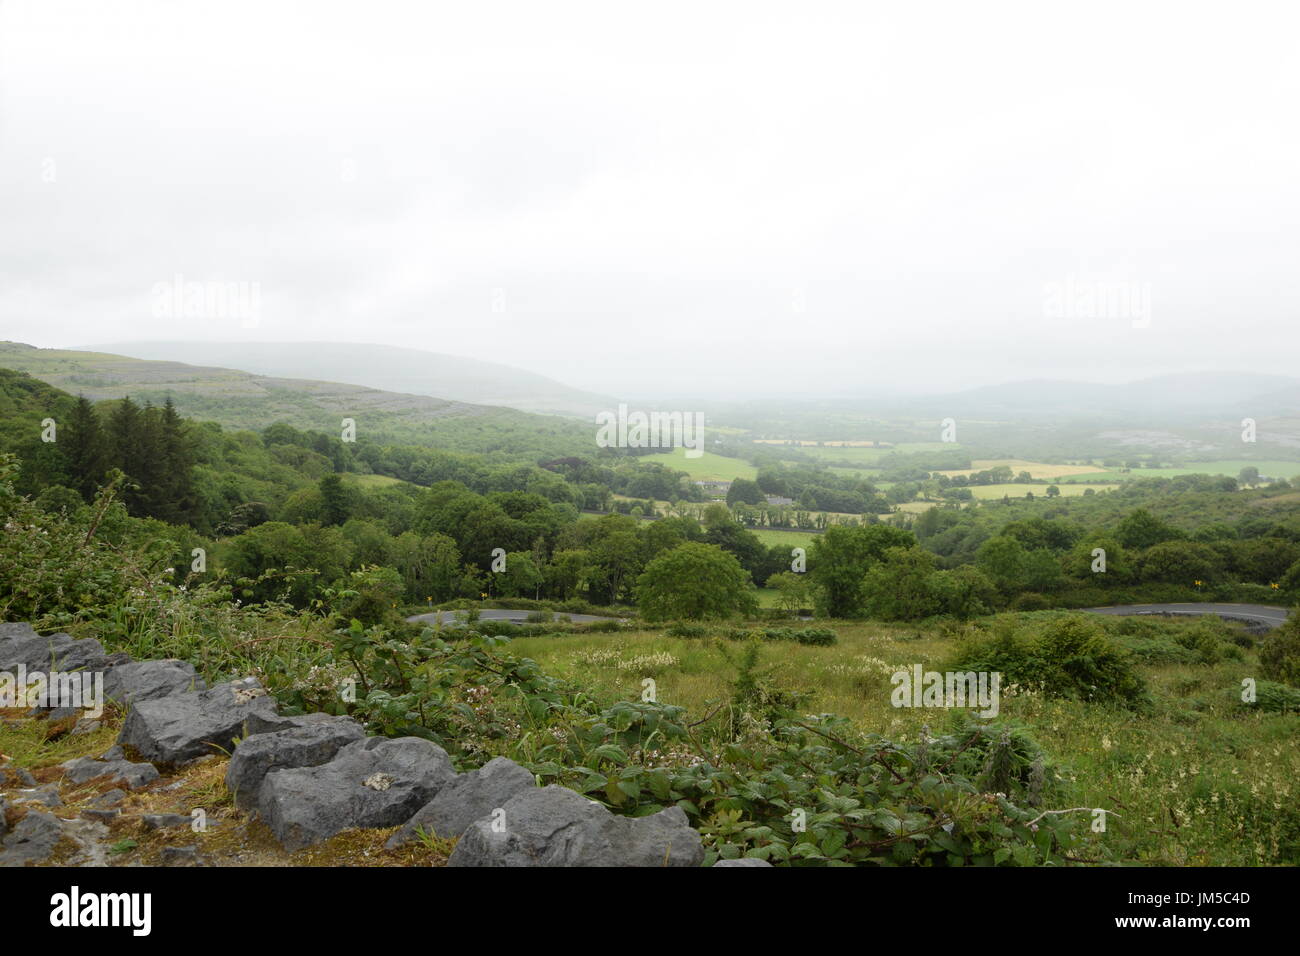 Vue de la région de la colline de tire-bouchon dans le comté de Clare, Irlande de l'ouest Banque D'Images